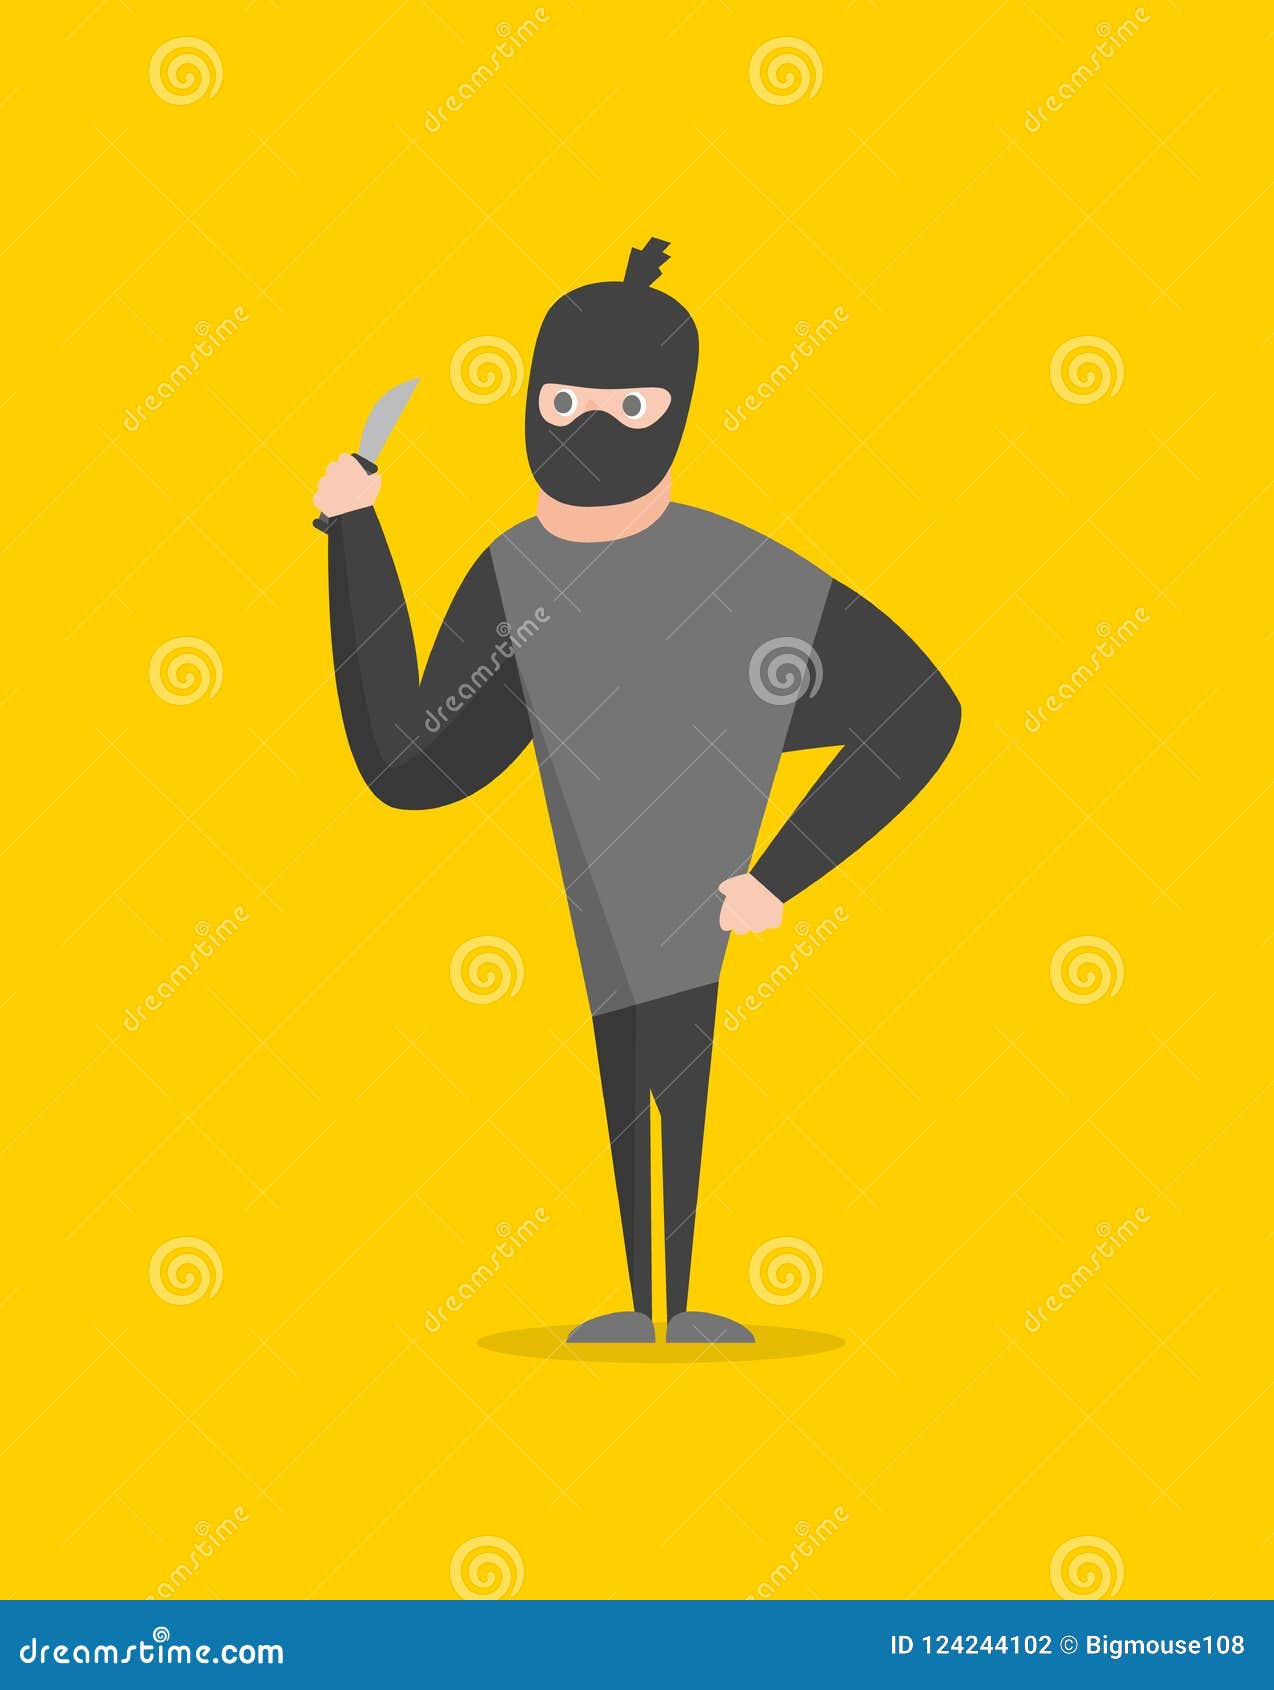 Um personagem de desenho animado de um ninja amarelo e preto